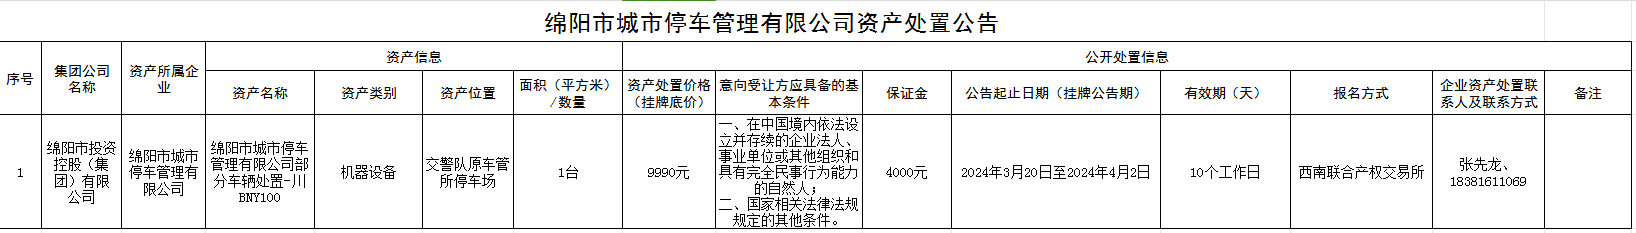 绵阳市城市停车管理有限企业资产处置公告0315